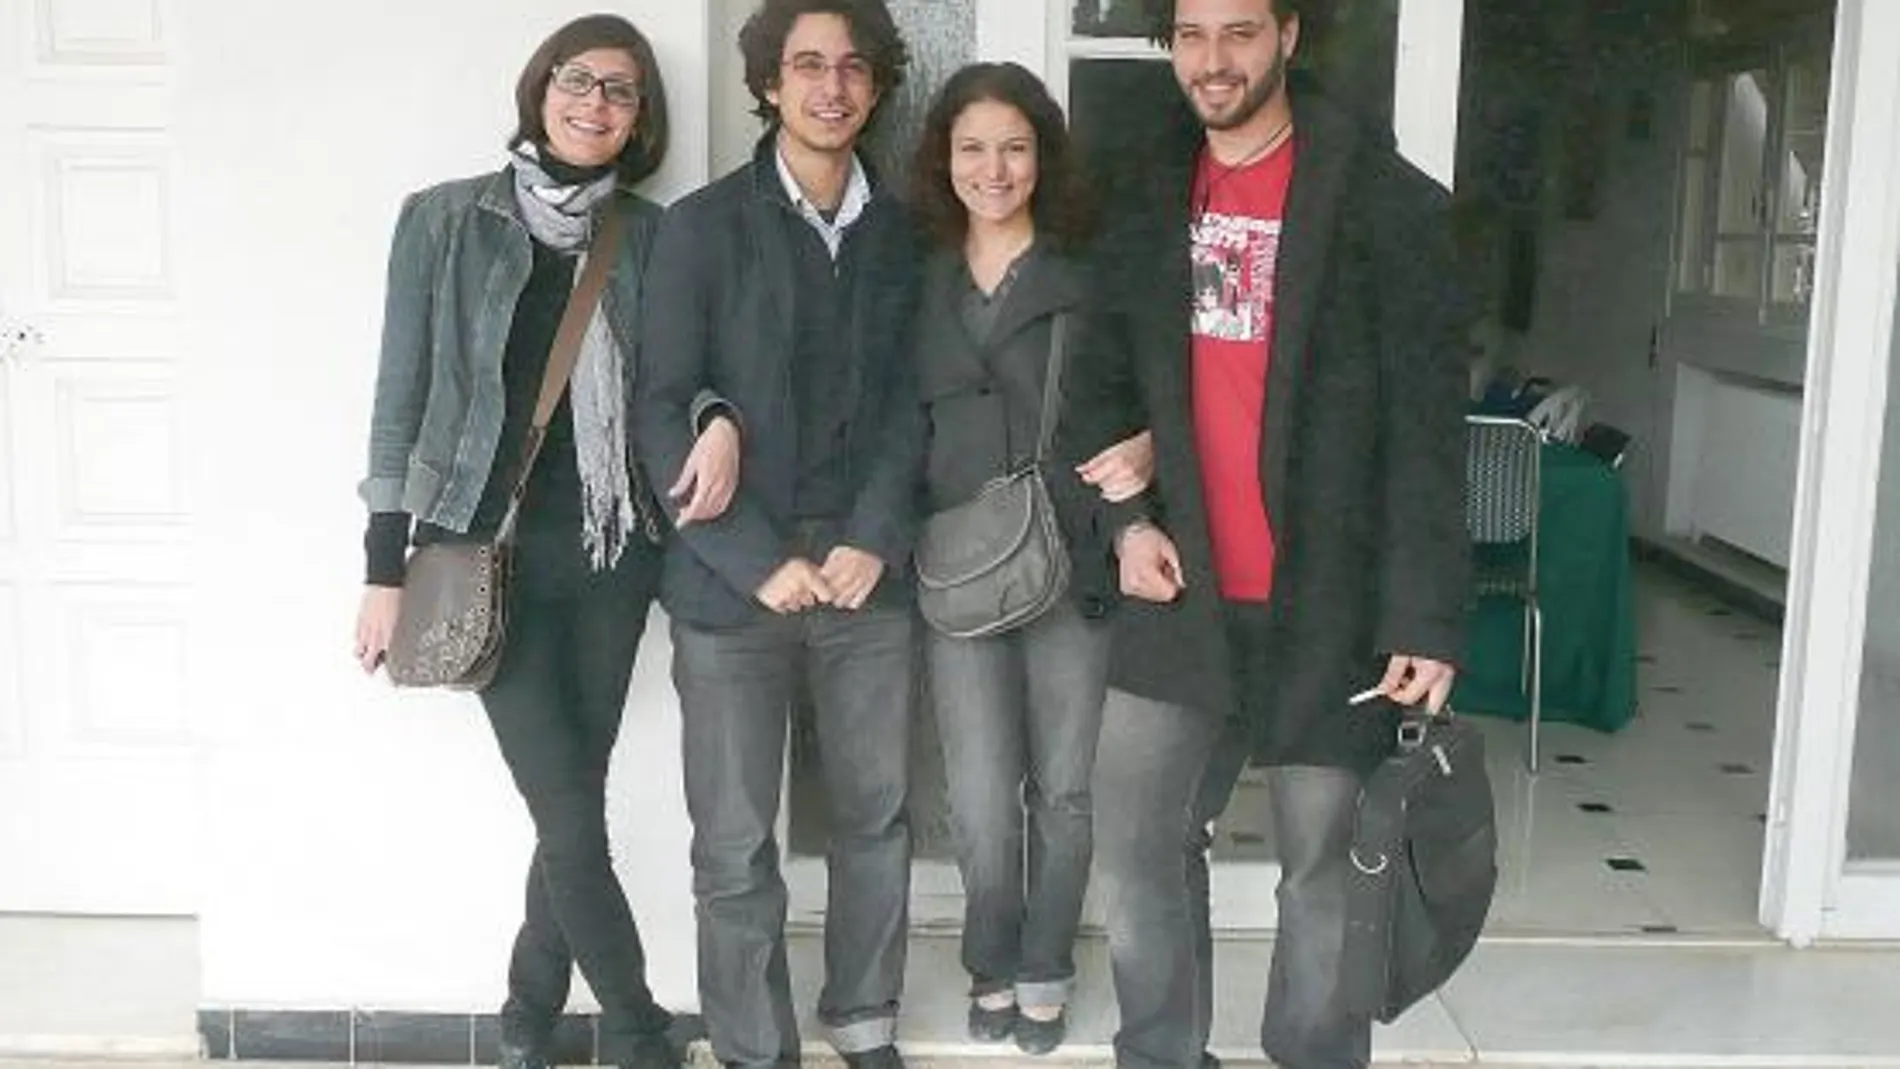 Jóvenes tunecinos libres. De izquierda a derecha, Amine, Skander, Myriam y Heythem